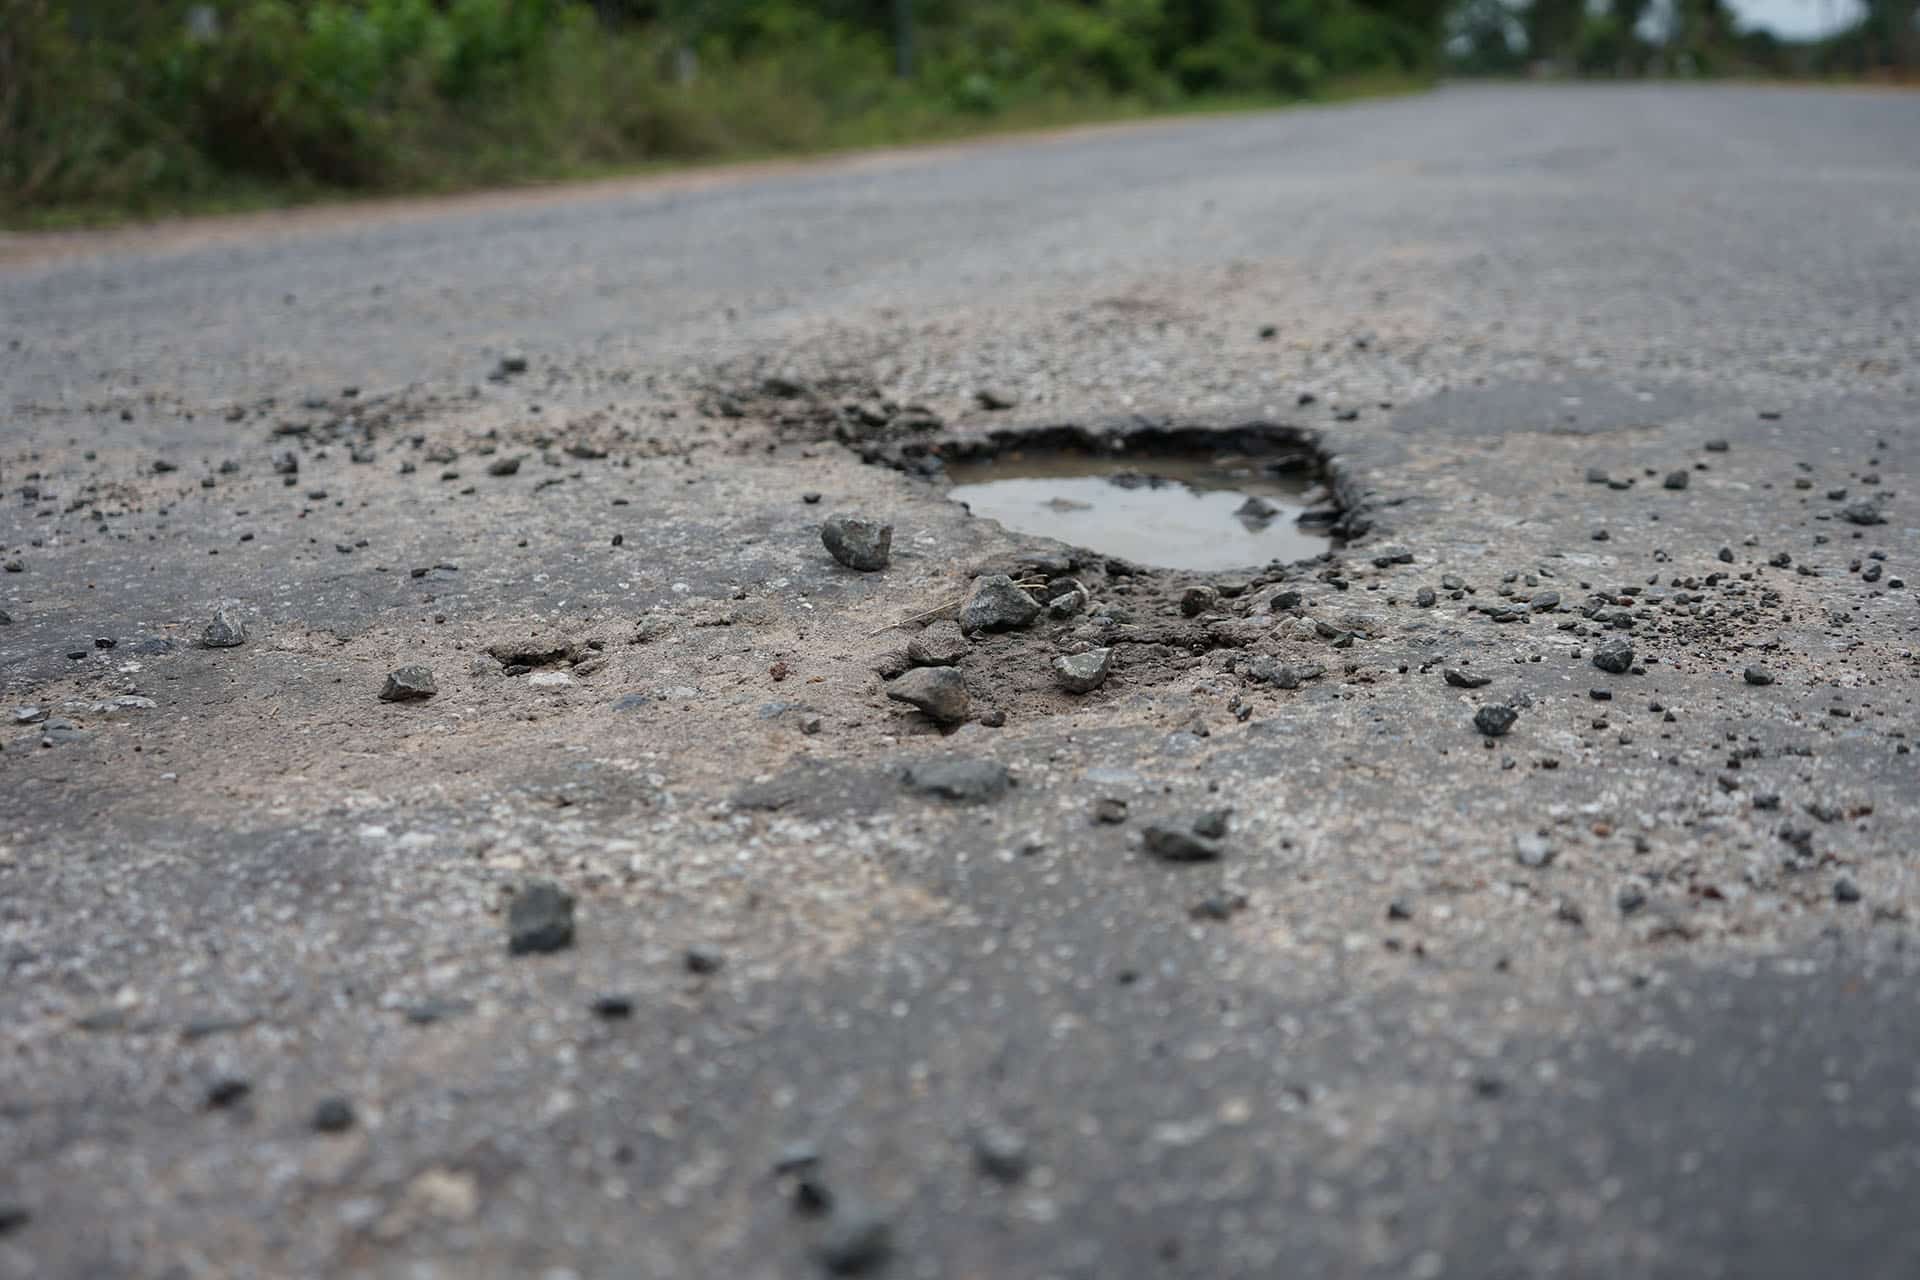 The road is potholes maintenance.